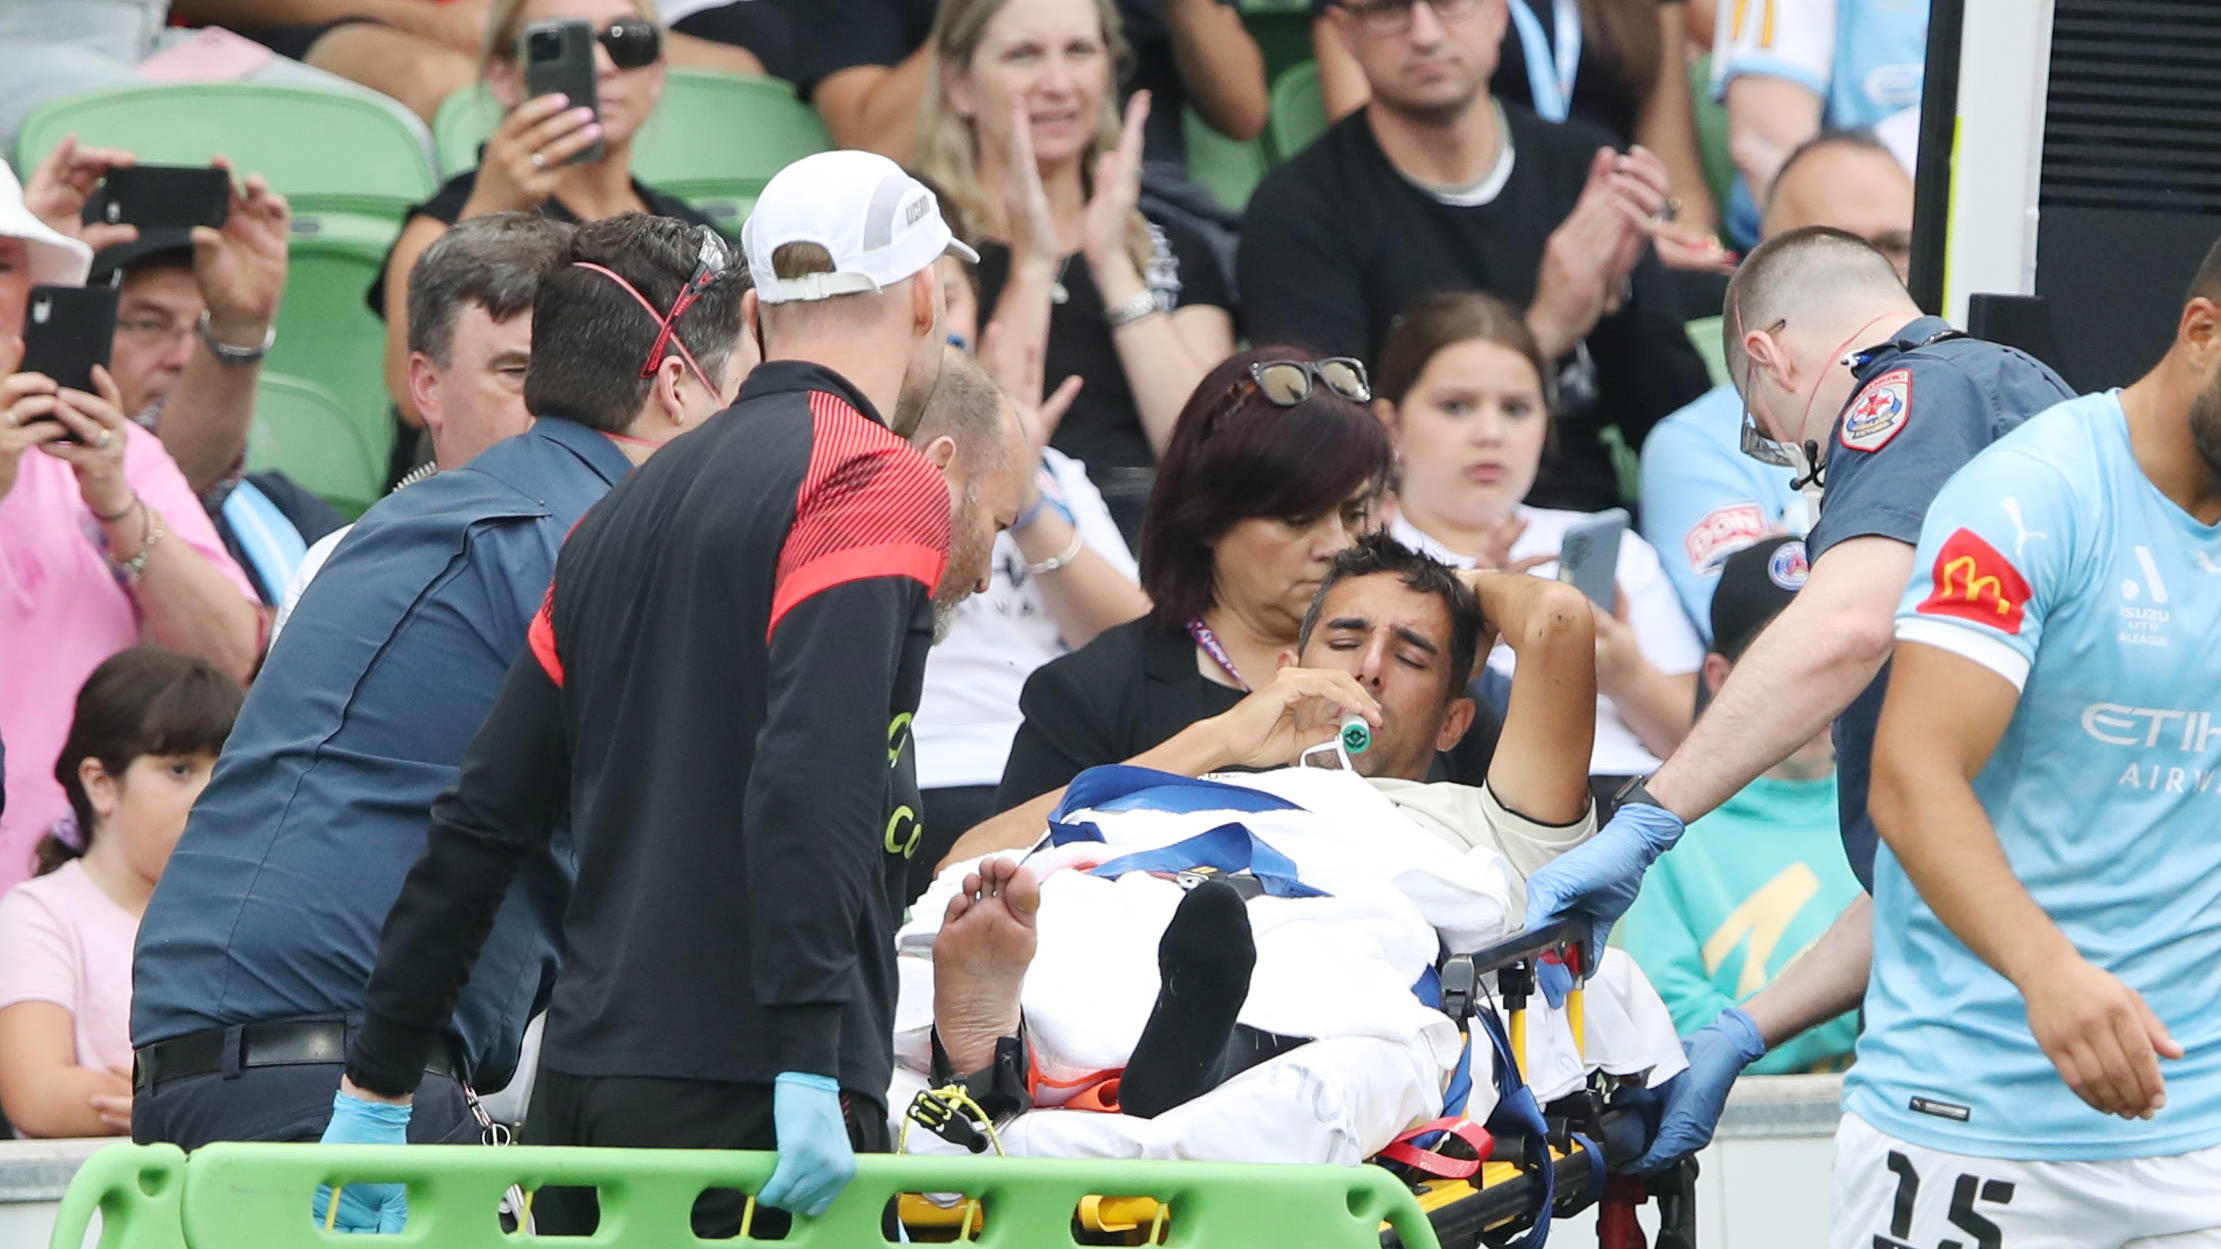 Adelaide-Spieler Juande wird nach seiner schweren Verletzung zum Krankenwagen gebracht.